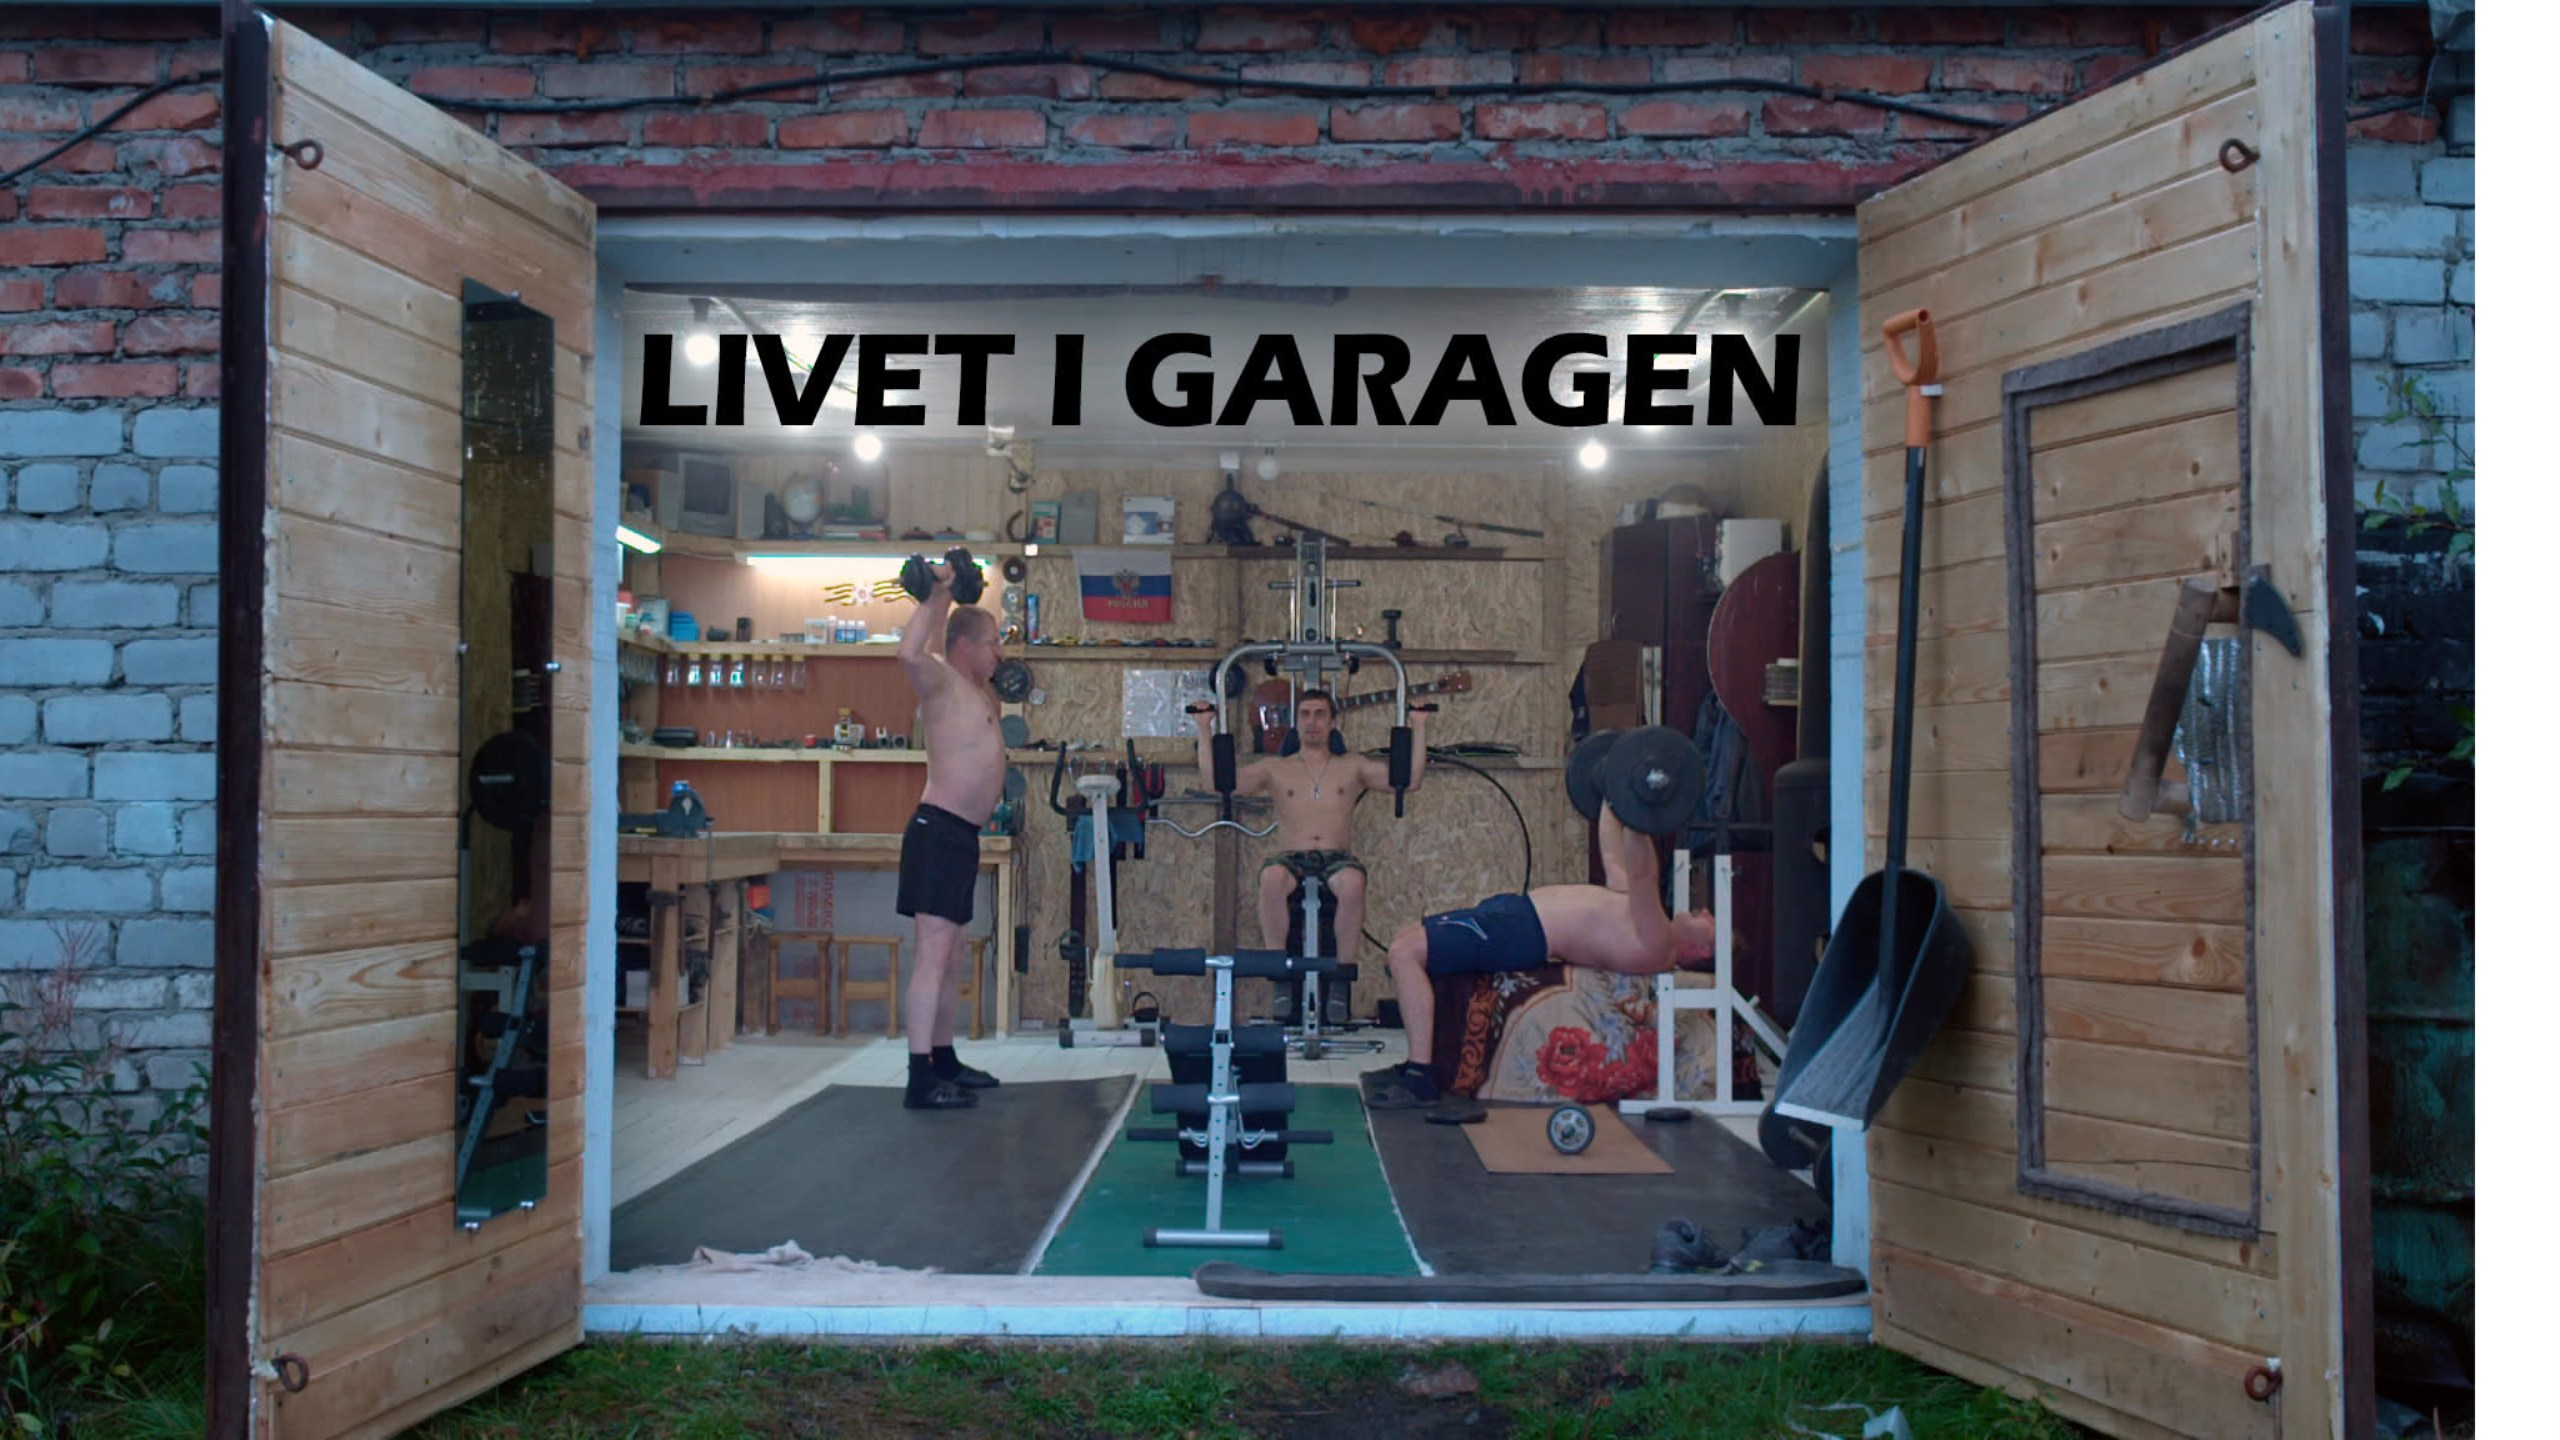 Livet i garagen